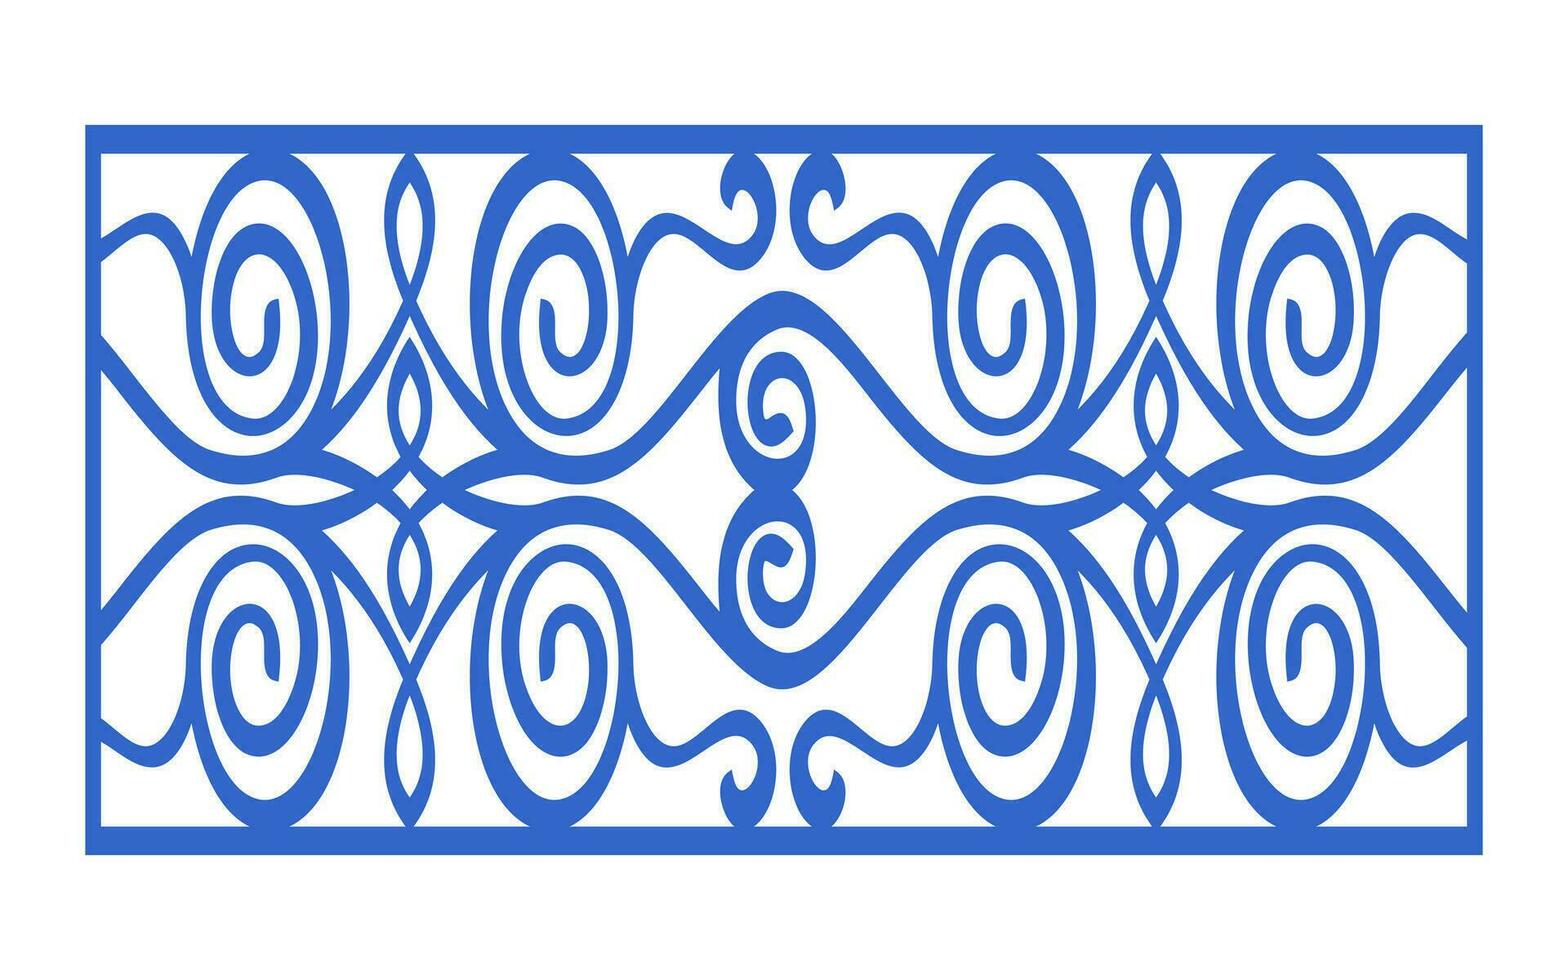 decoratief blauw patronen, islamitisch, bloemen en meetkundig sjabloon voor cnc laser snijdend vector